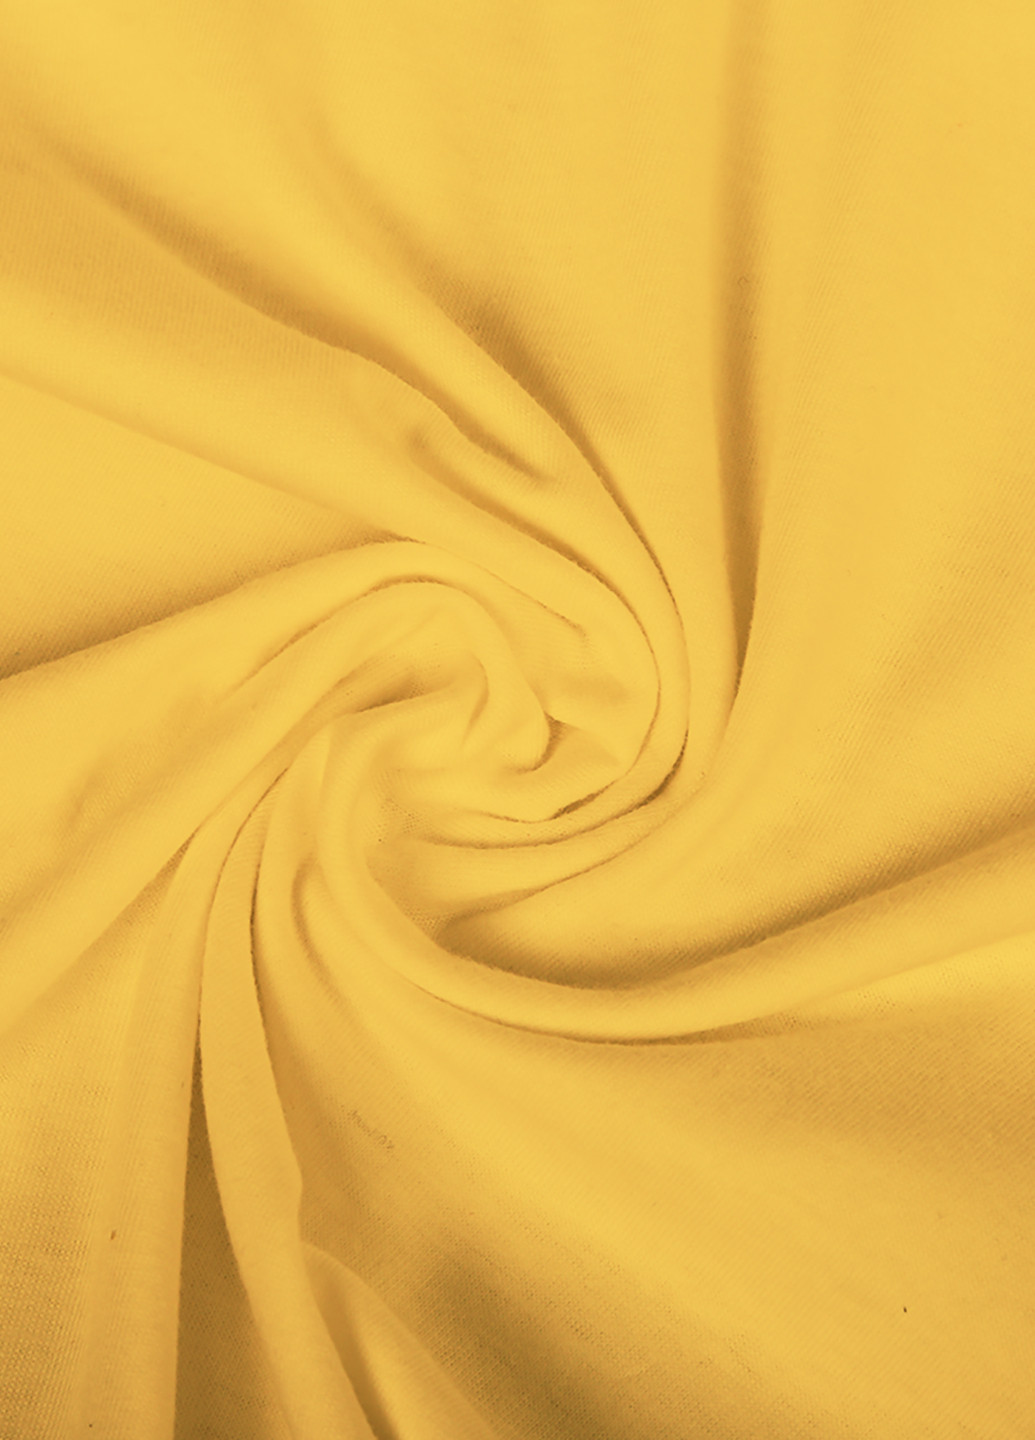 Желтая демисезонная футболка детская фортнайт (fortnite)(9224-1196) MobiPrint